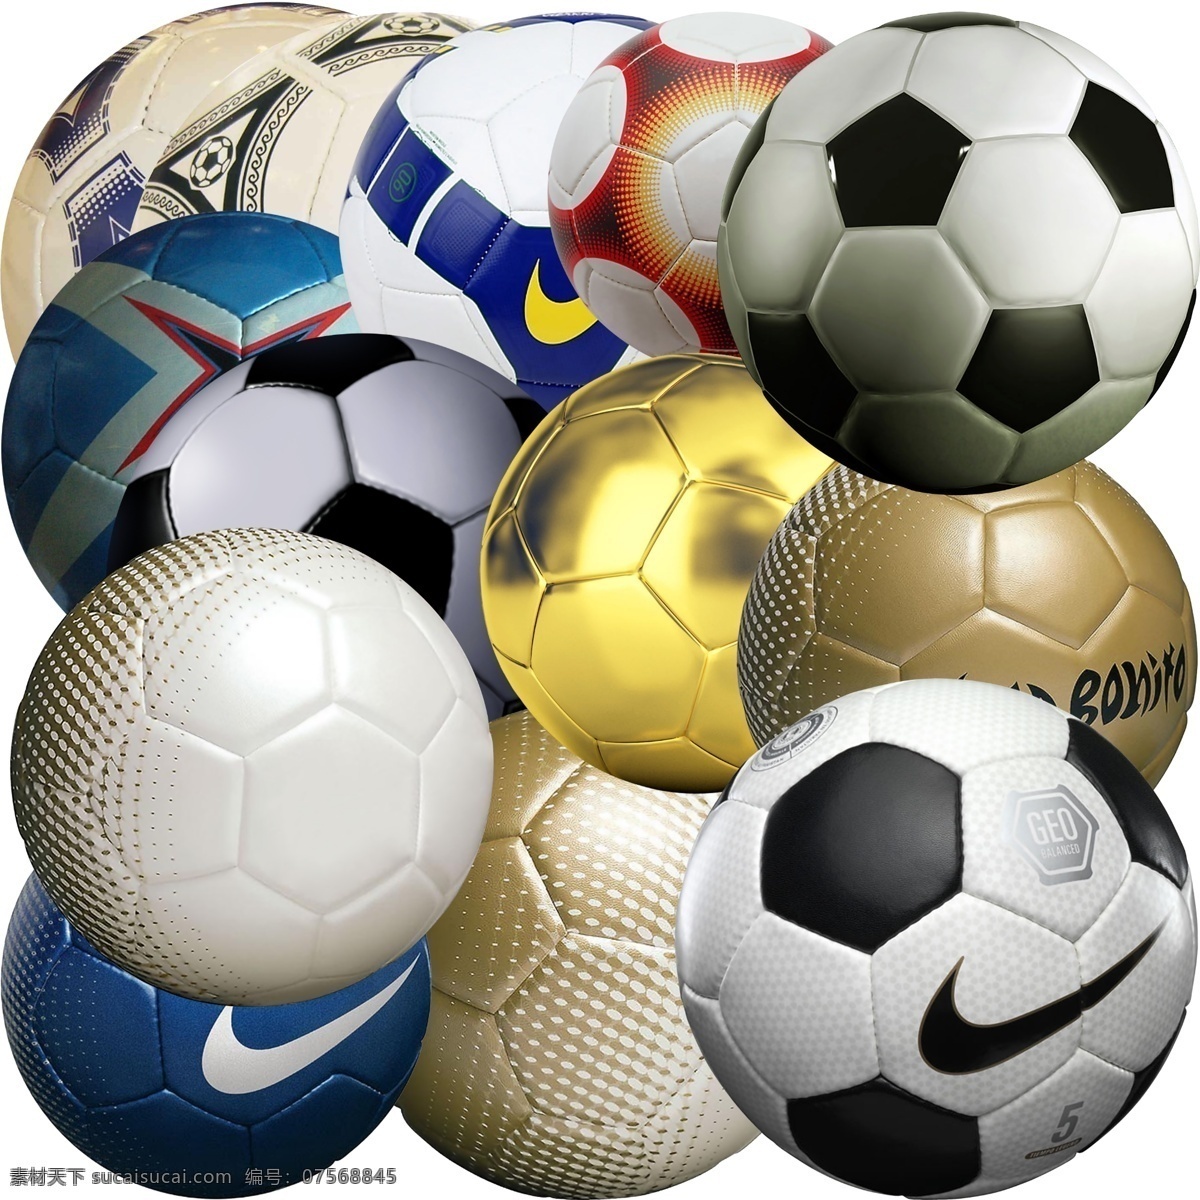 足球 模版下载 足球素材下载 足球模板下载 球 足球psd 体育 运动 世界杯 耐克 体育用品 体育文化 金球 皮球 源文件 白色